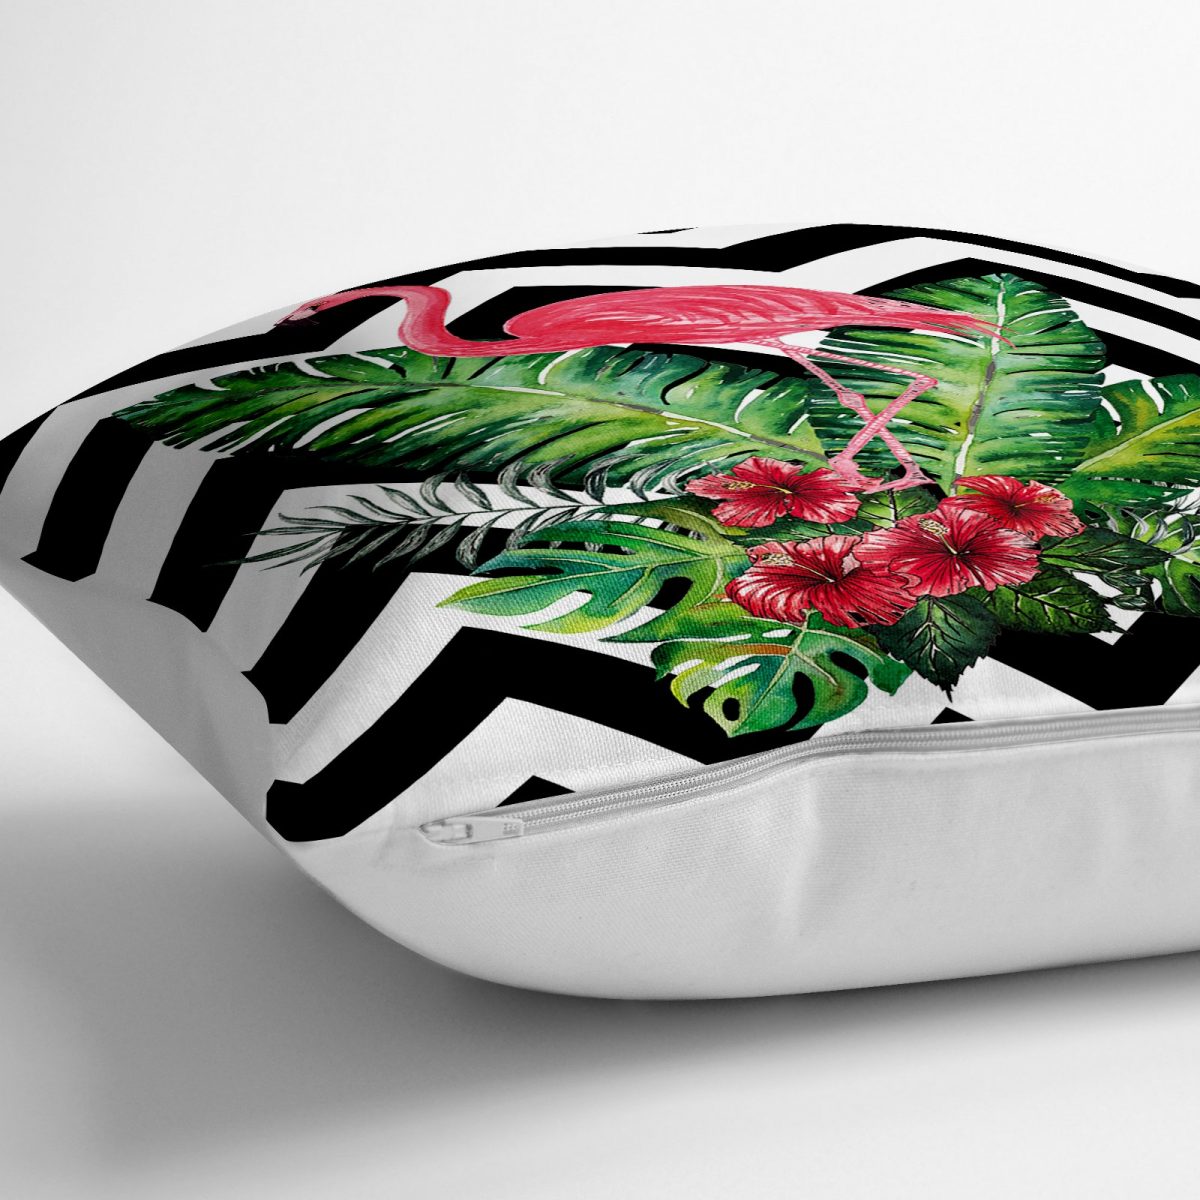 Siyah Beyaz Zigzag ve Flamingo Tasarımlı 3D Dekoratif Yer Minderi - 70 x 70 cm Realhomes